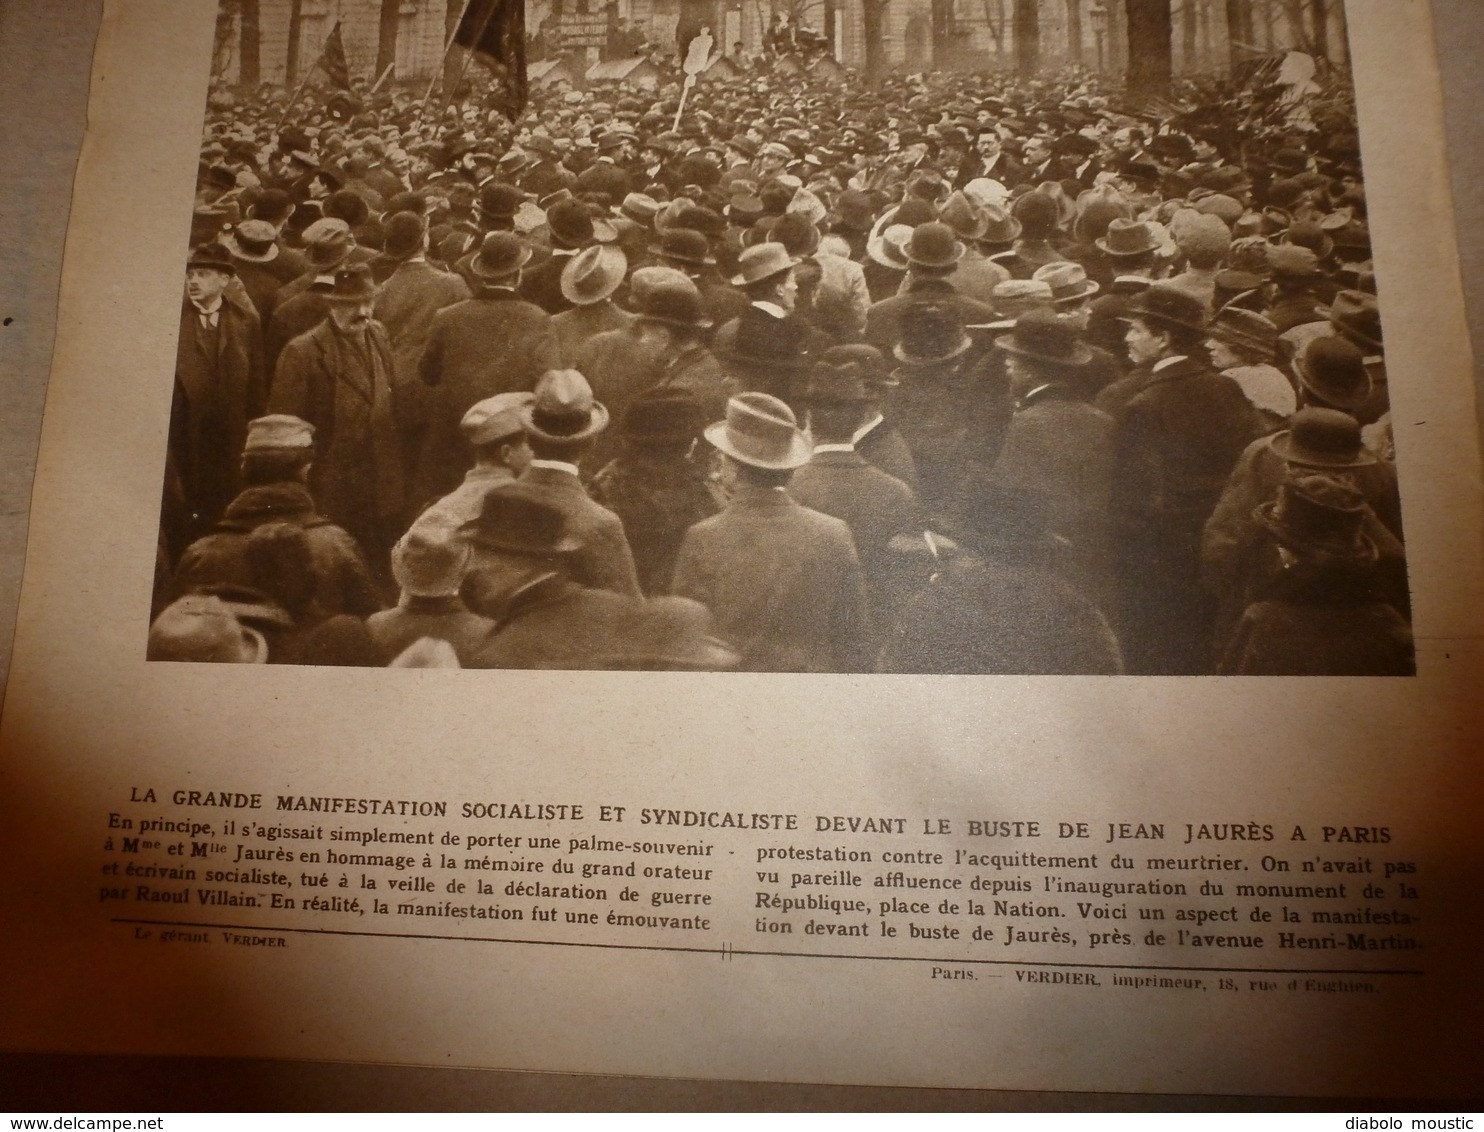 1919 LE MIROIR:Pneus en bois;Spa;Révolution russe;Polonais à Posen;La soupe à Buapest;Jaon;Cameroun allemand;Arras;etc